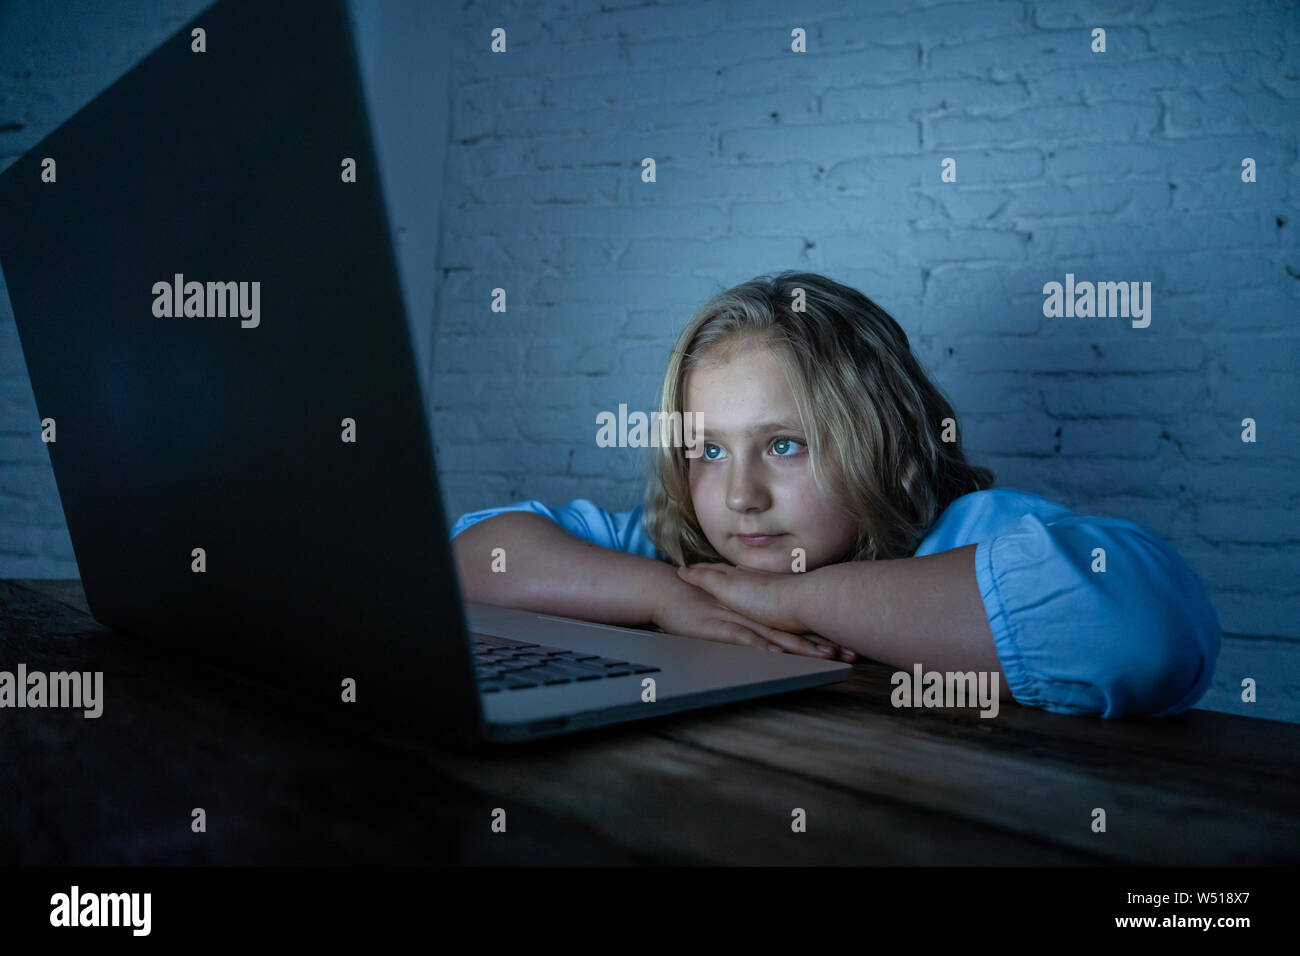 Erschrocken Trauriges Mädchen gemobbt auf Linie mit Laptop leiden Cyber Mobbing Mobbing Verzweiflung und eingeschüchtert. Kind Opfer von Mobbing Stalker so Stockfoto